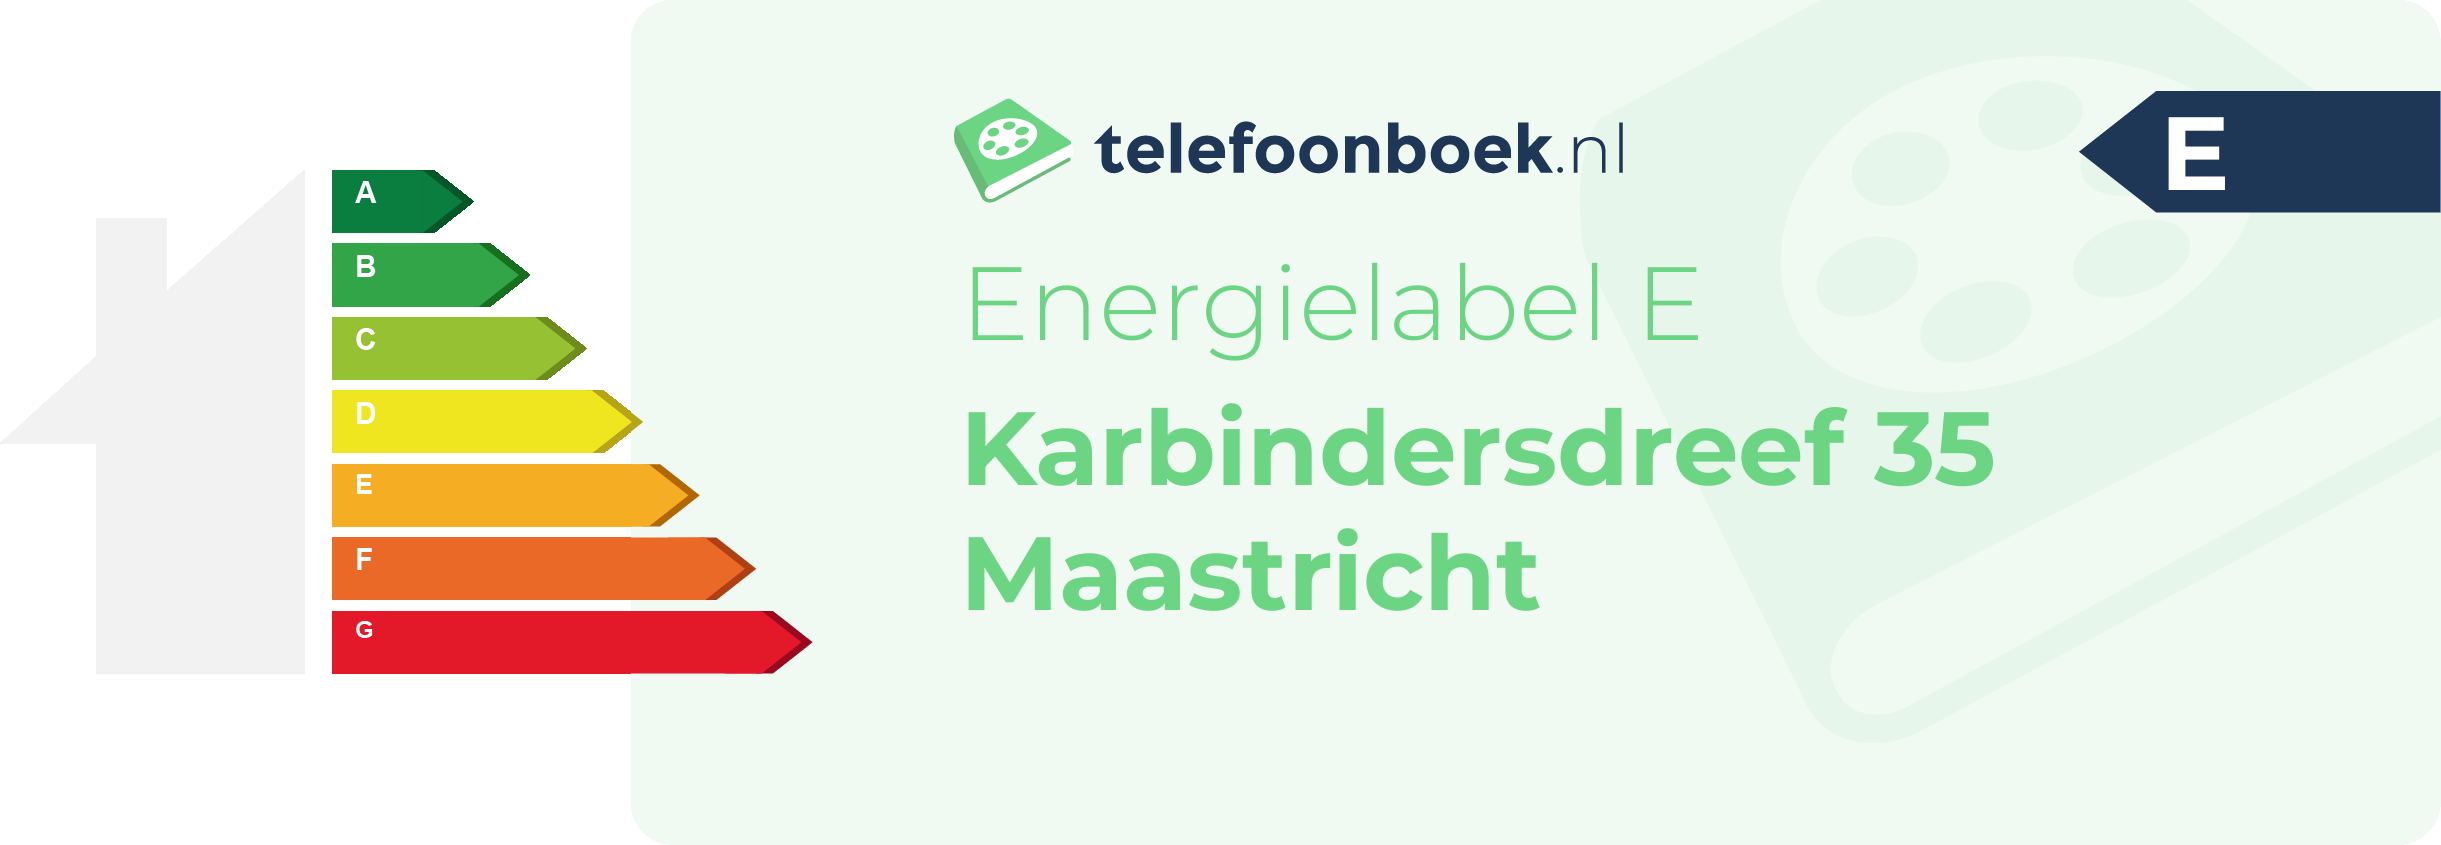 Energielabel Karbindersdreef 35 Maastricht